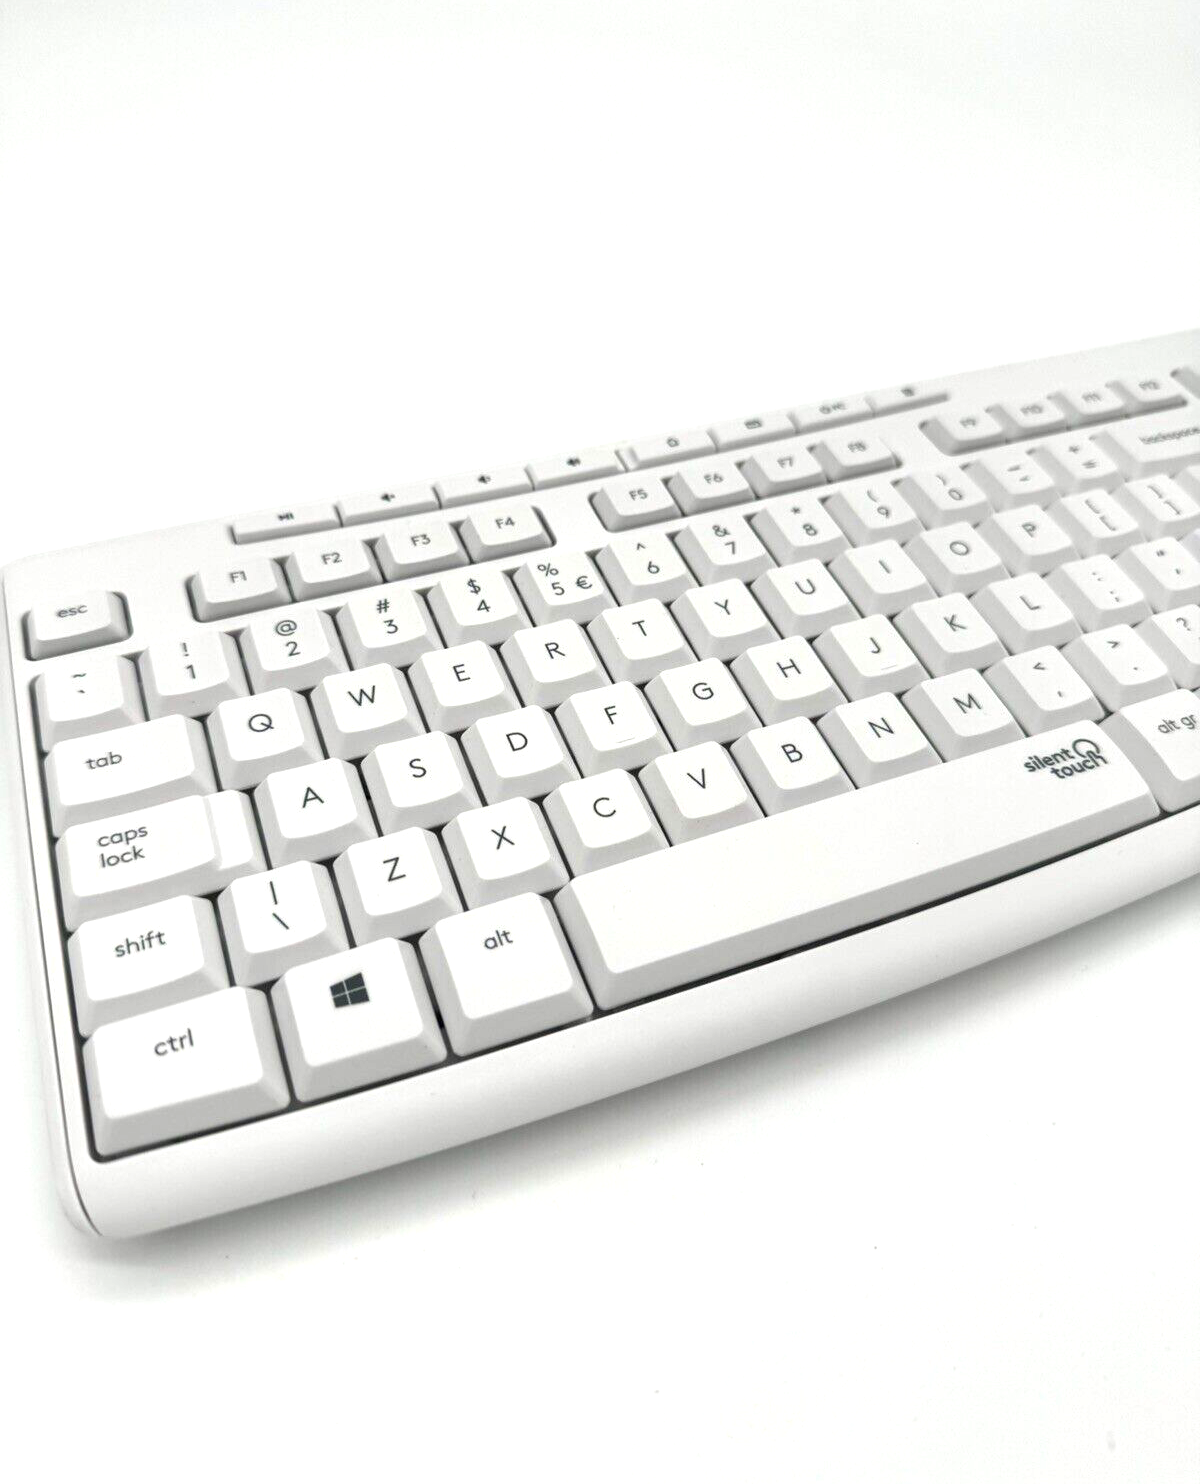 Logitech MK295 kabelloses Tastatur SilentTouch Technologie Keying